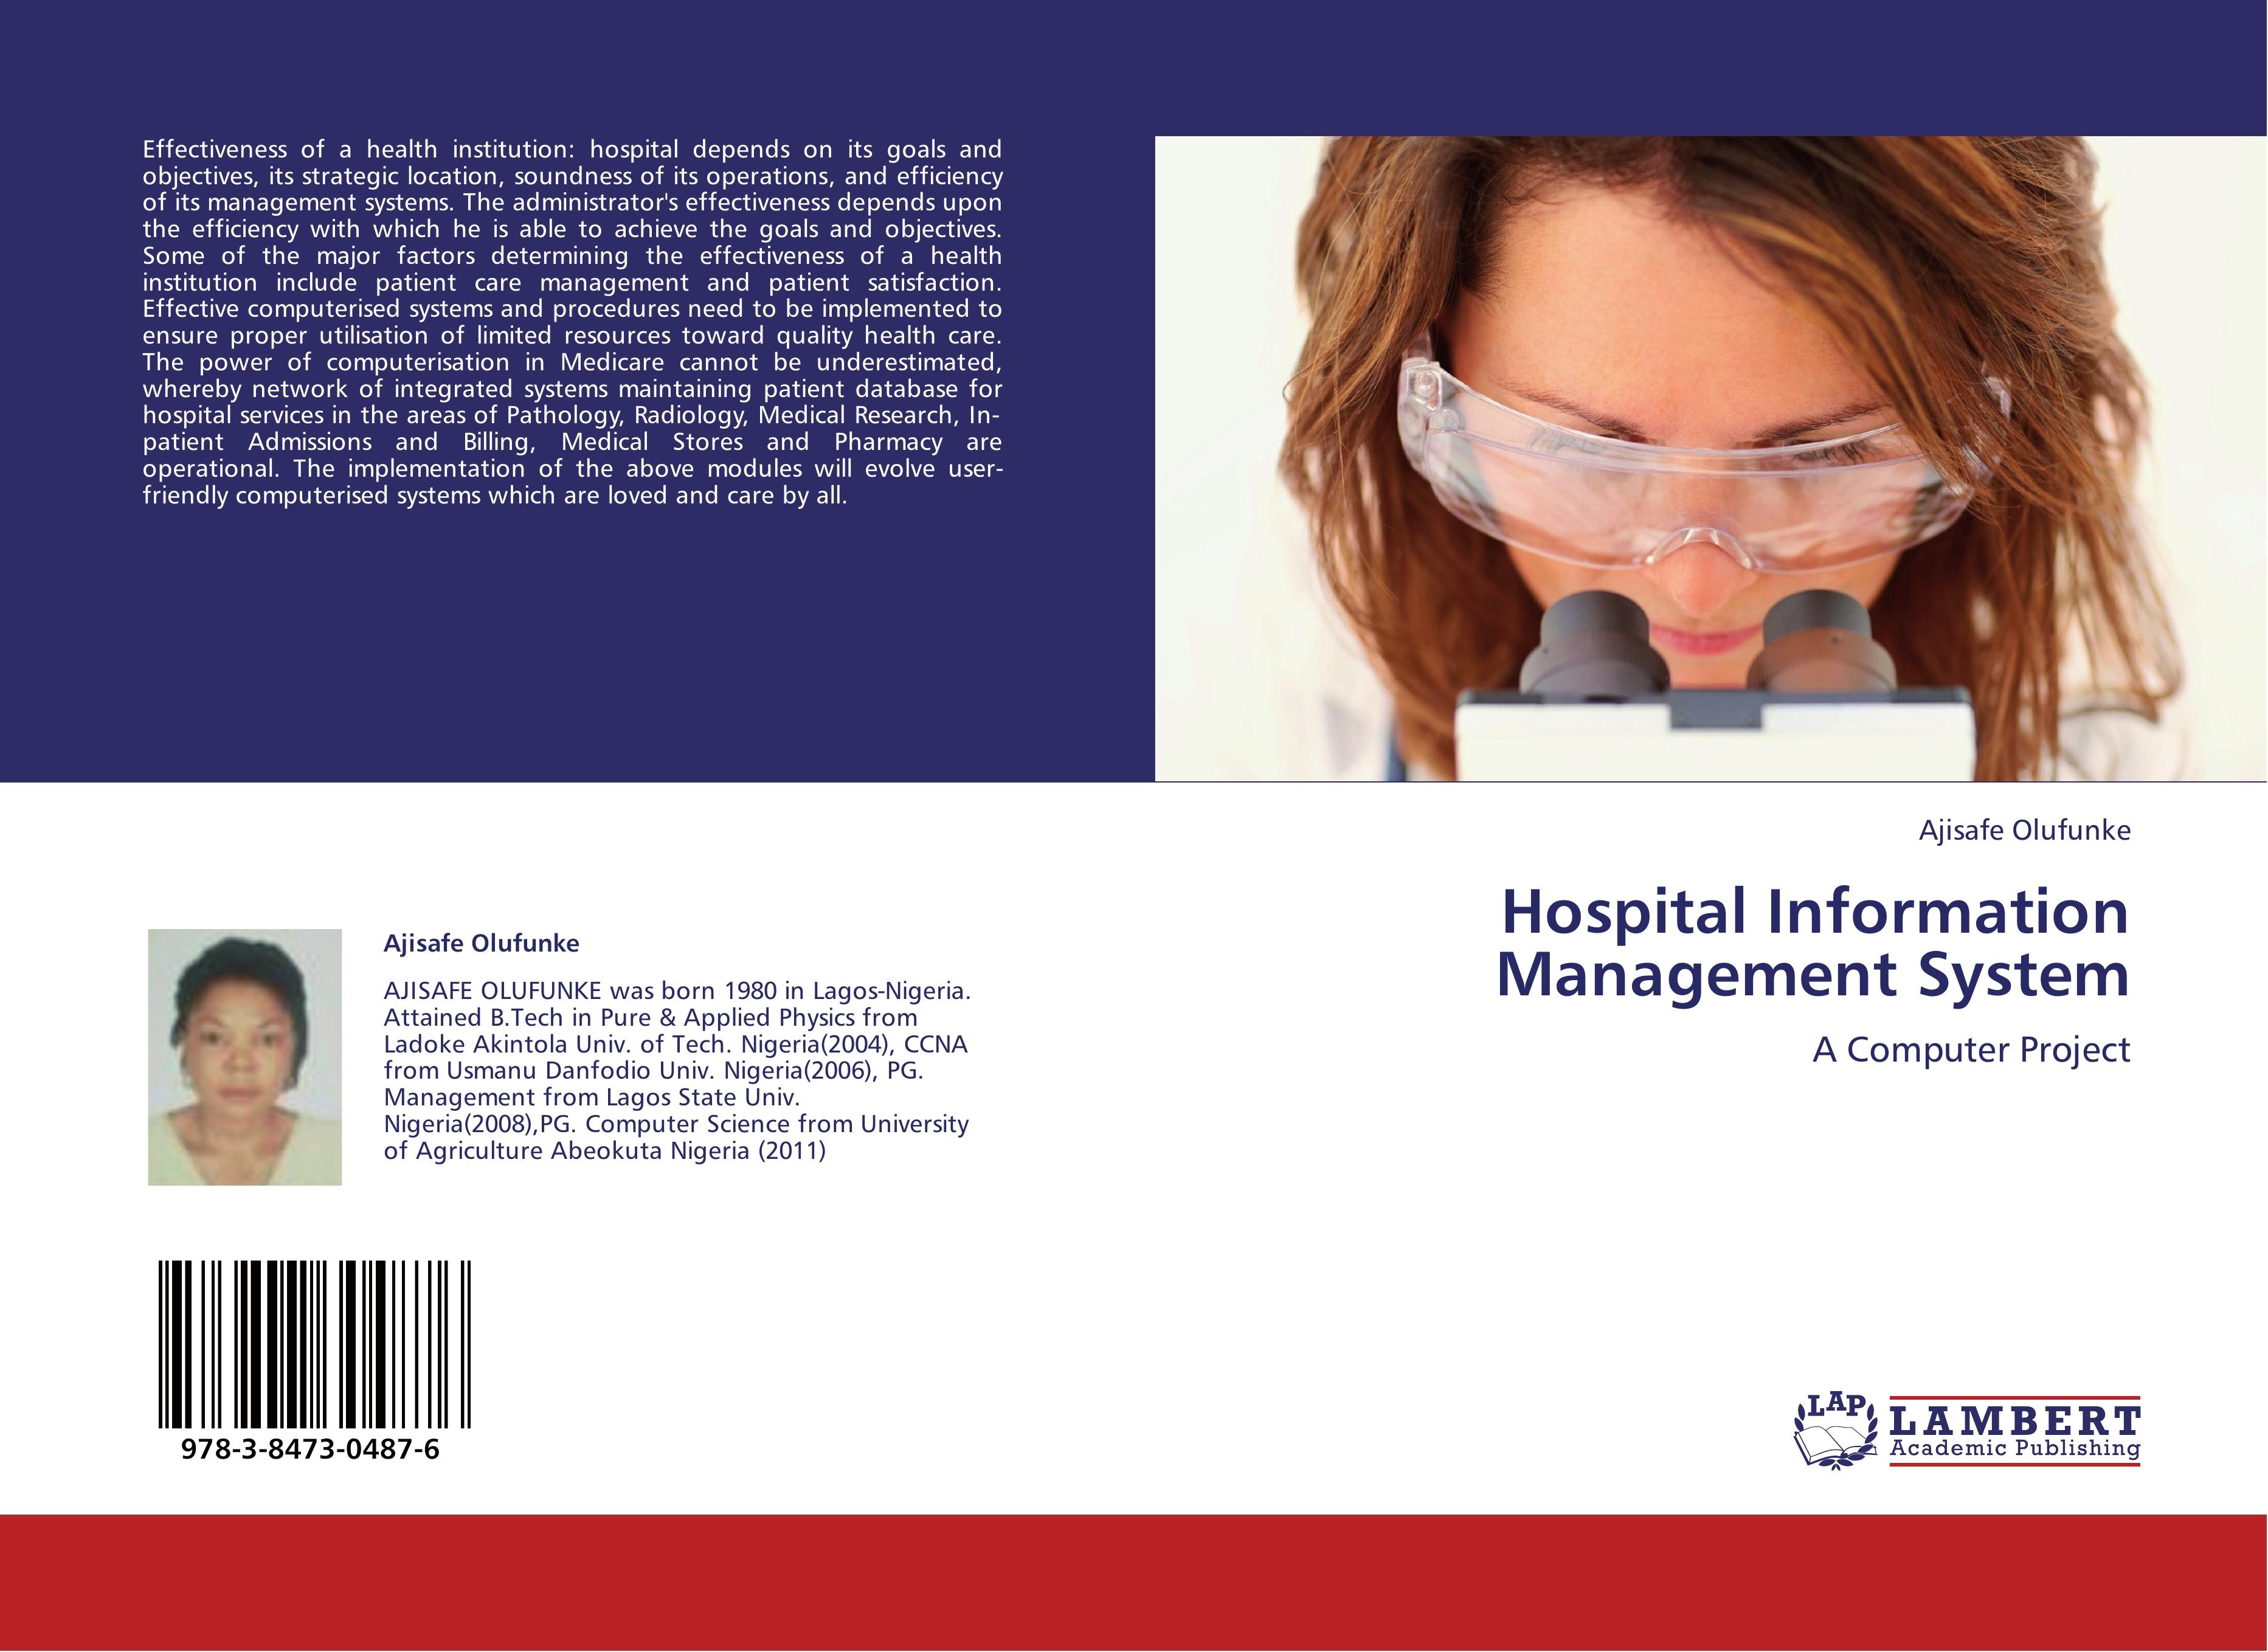 Hospital Information Management System - Ajisafe Olufunke